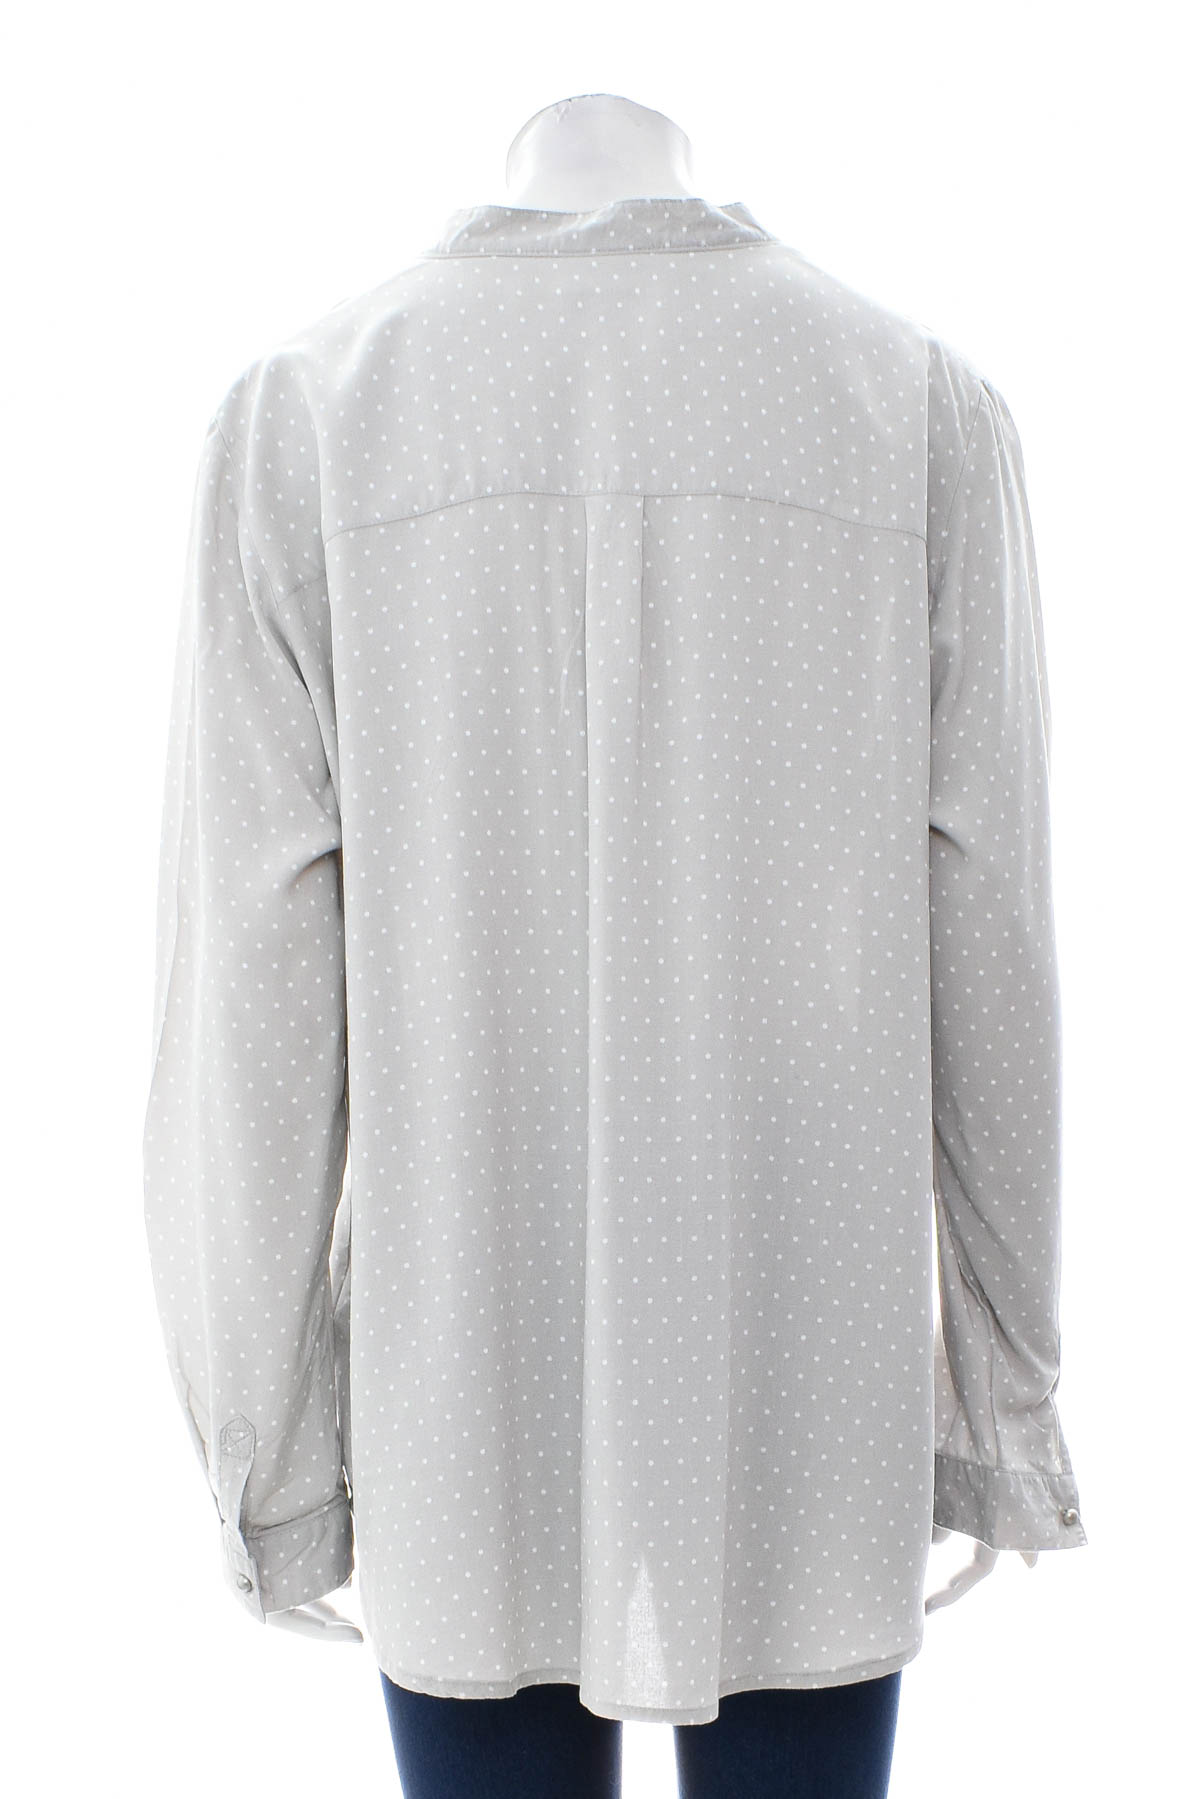 Γυναικείо πουκάμισο - Bpc selection bonprix collection - 1